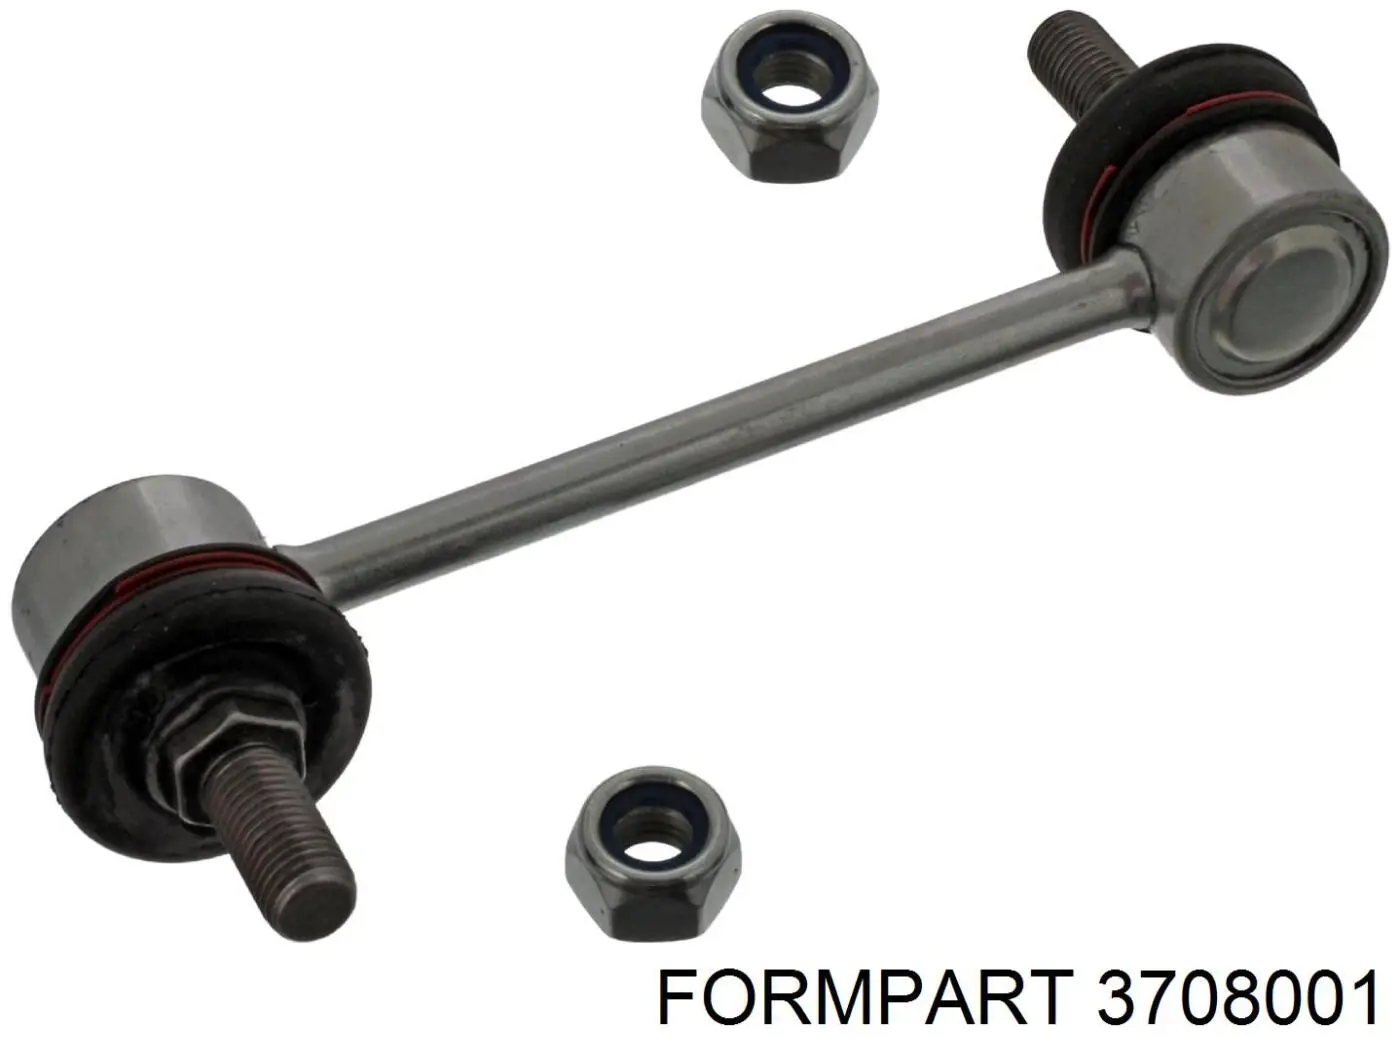 3708001 Formpart/Otoform стойка стабилизатора заднего